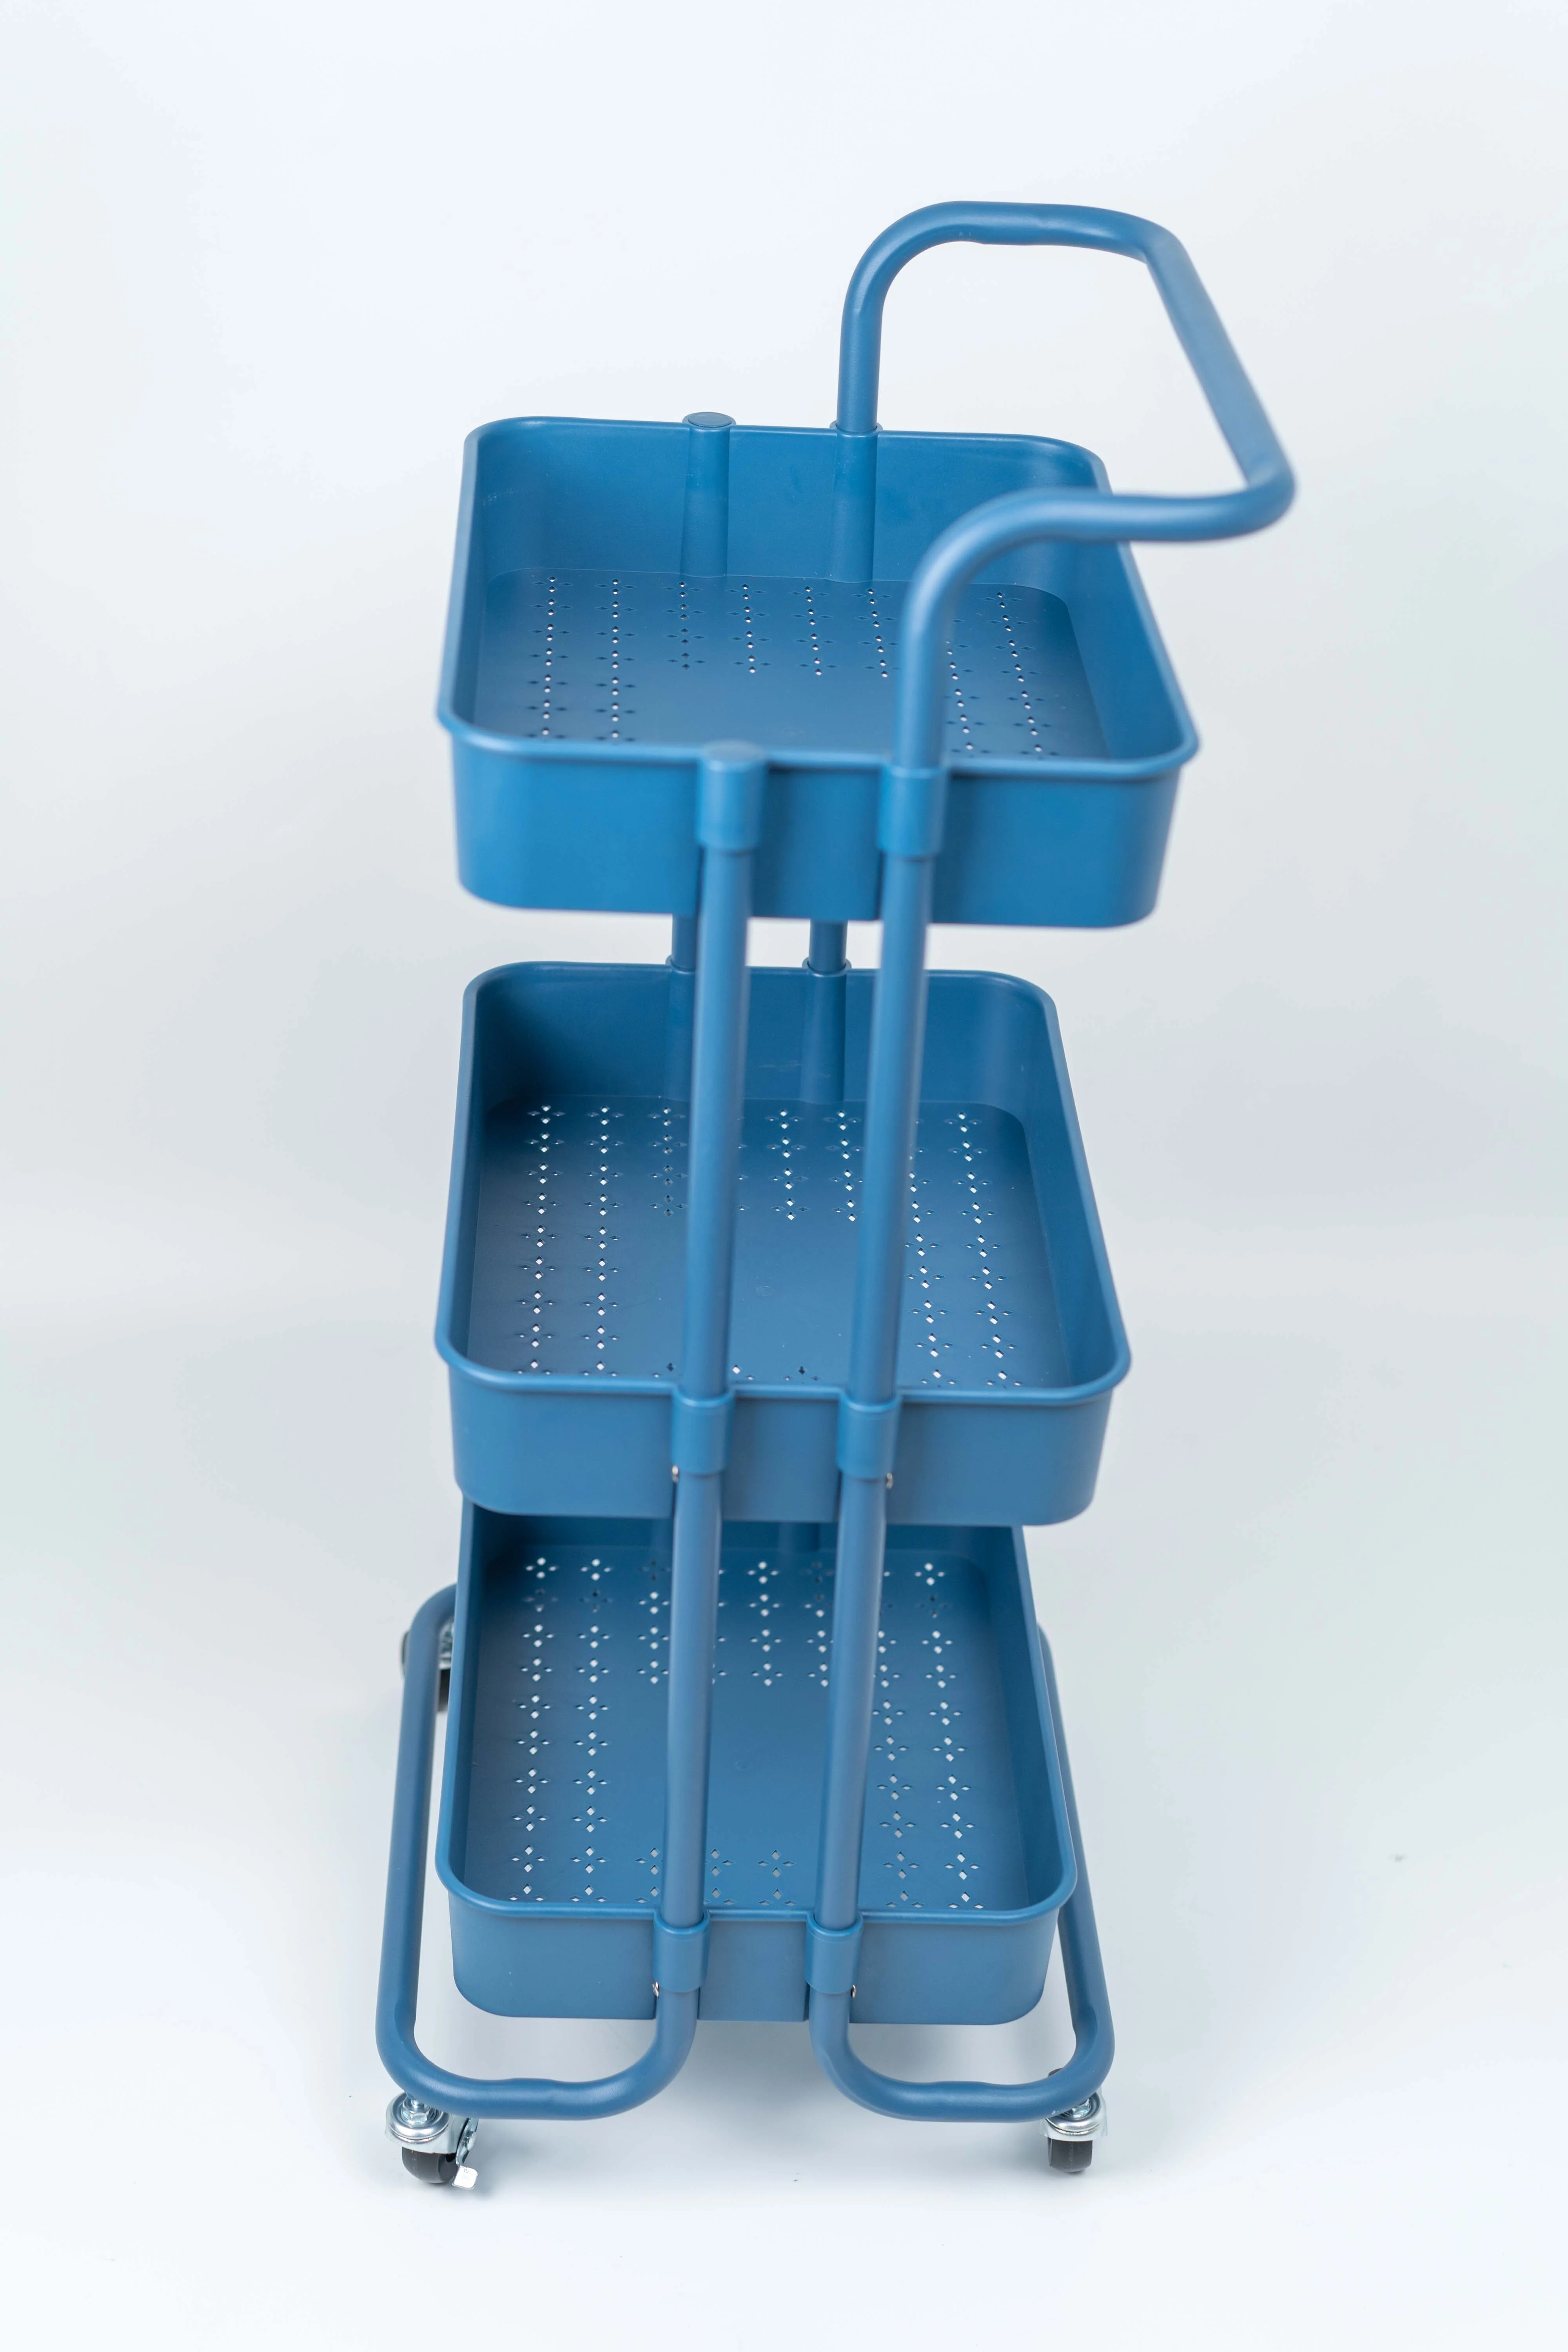 
3 Tier Rolling Trolley Dark Blue ABS Basket Organizer Shelves Kitchen Bathroom Storage Cart 